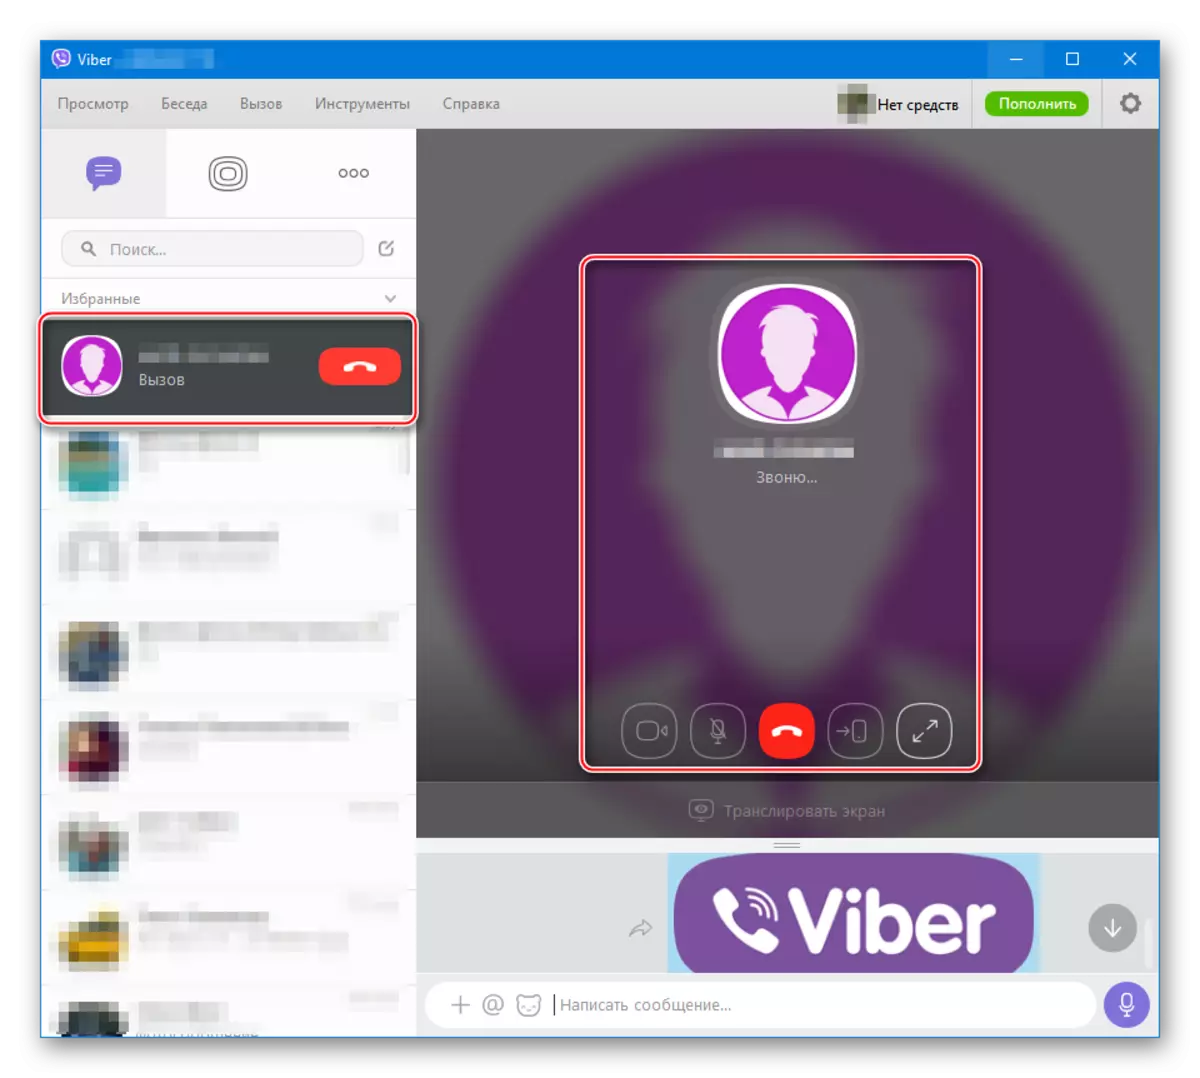 Viber für Windows-Audio- und Videoanrufe über Messenger